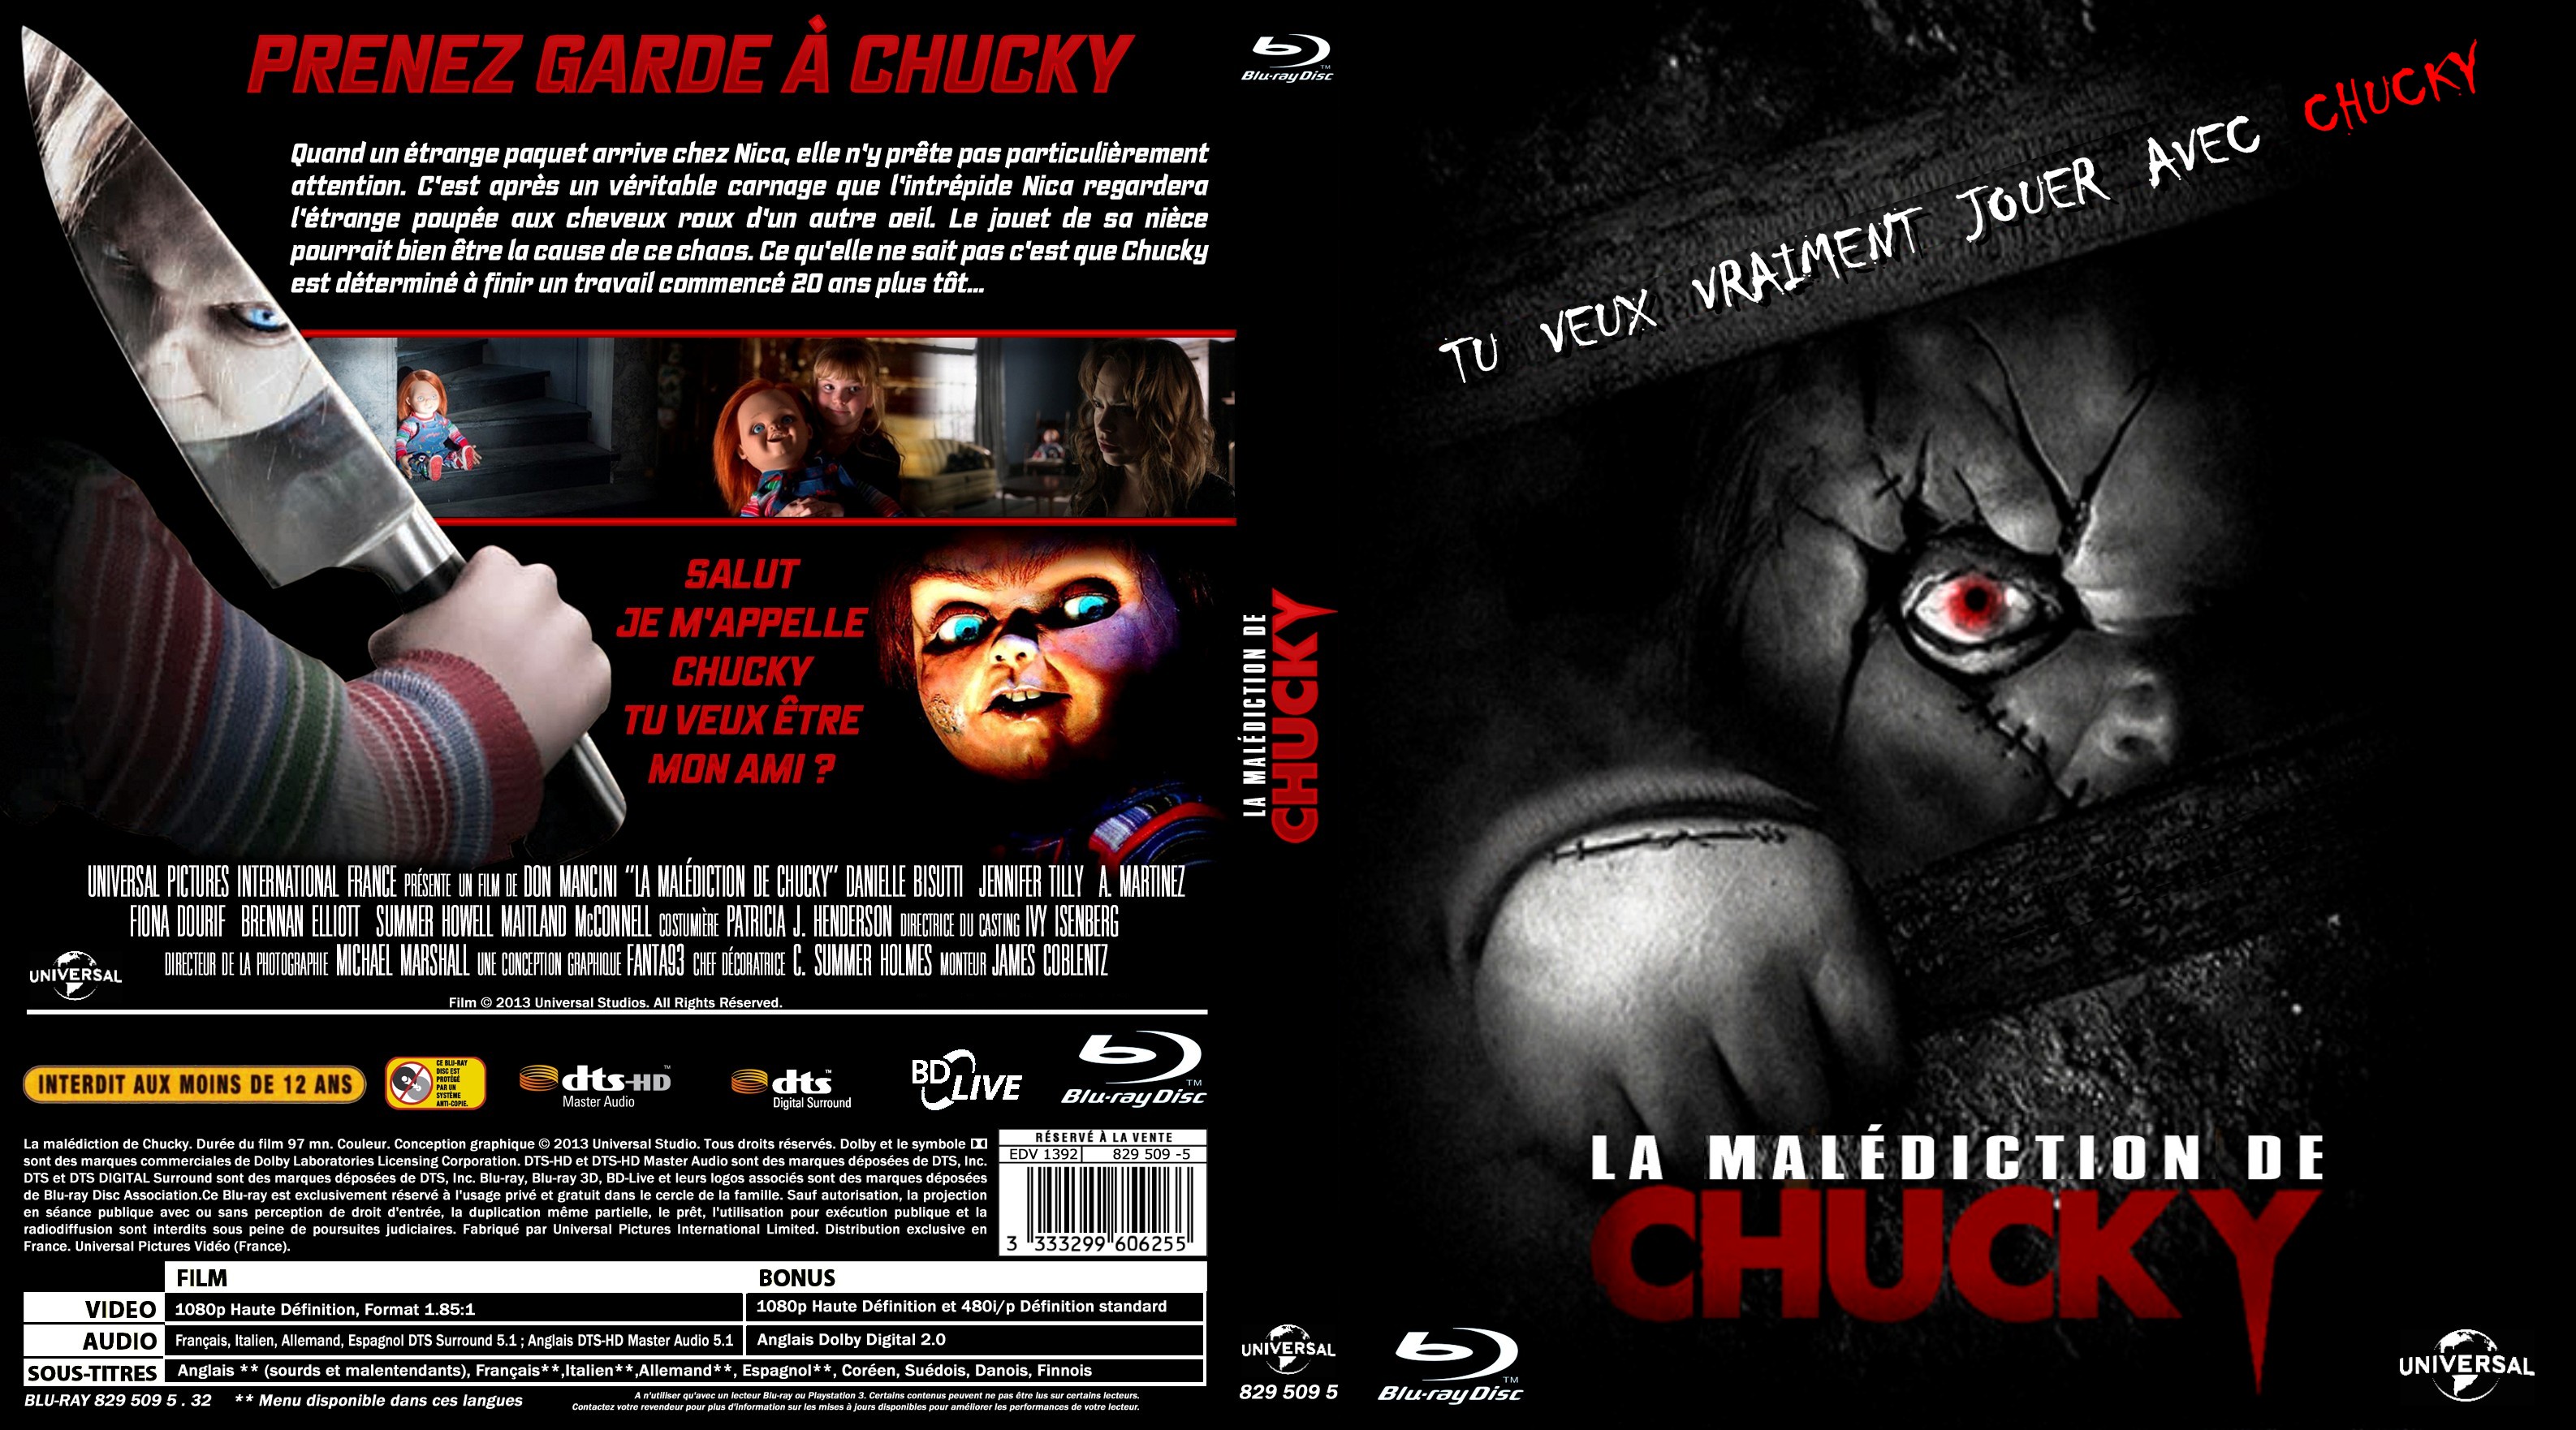 Jaquette DVD La maldiction de chucky custom (BLU-RAY) v2